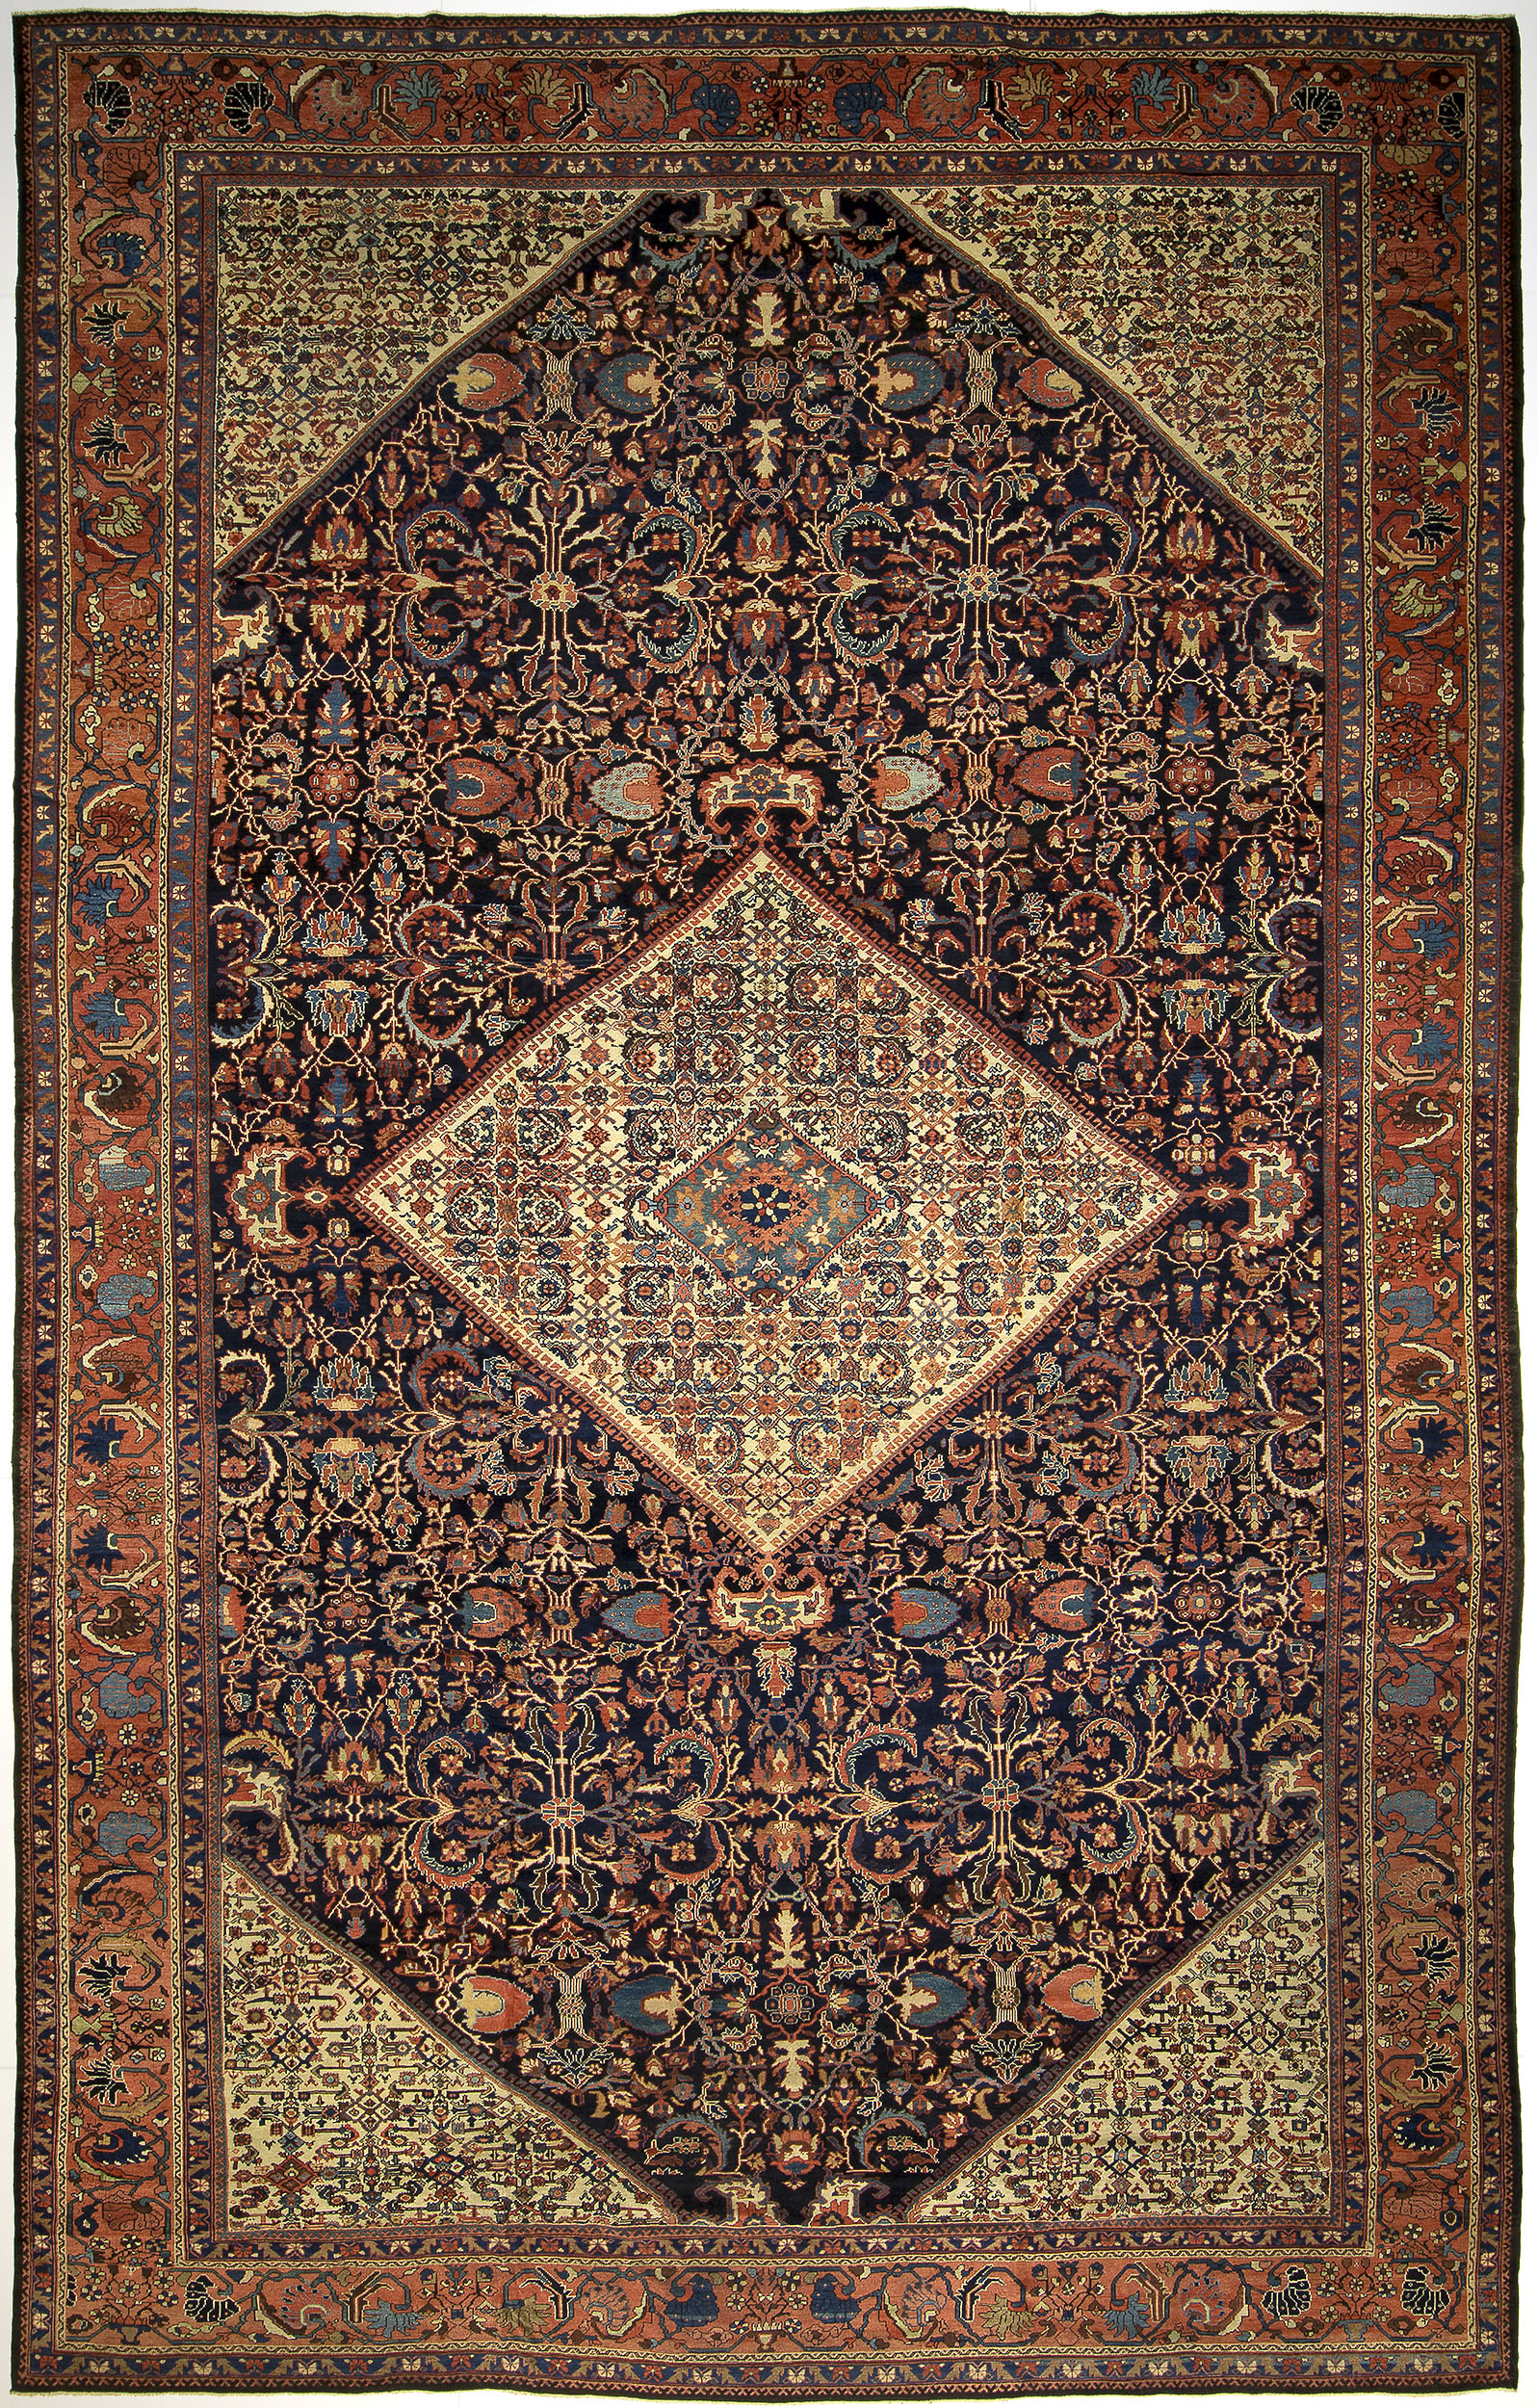 Mahal Carpet 20' 2" x 12' 6" 